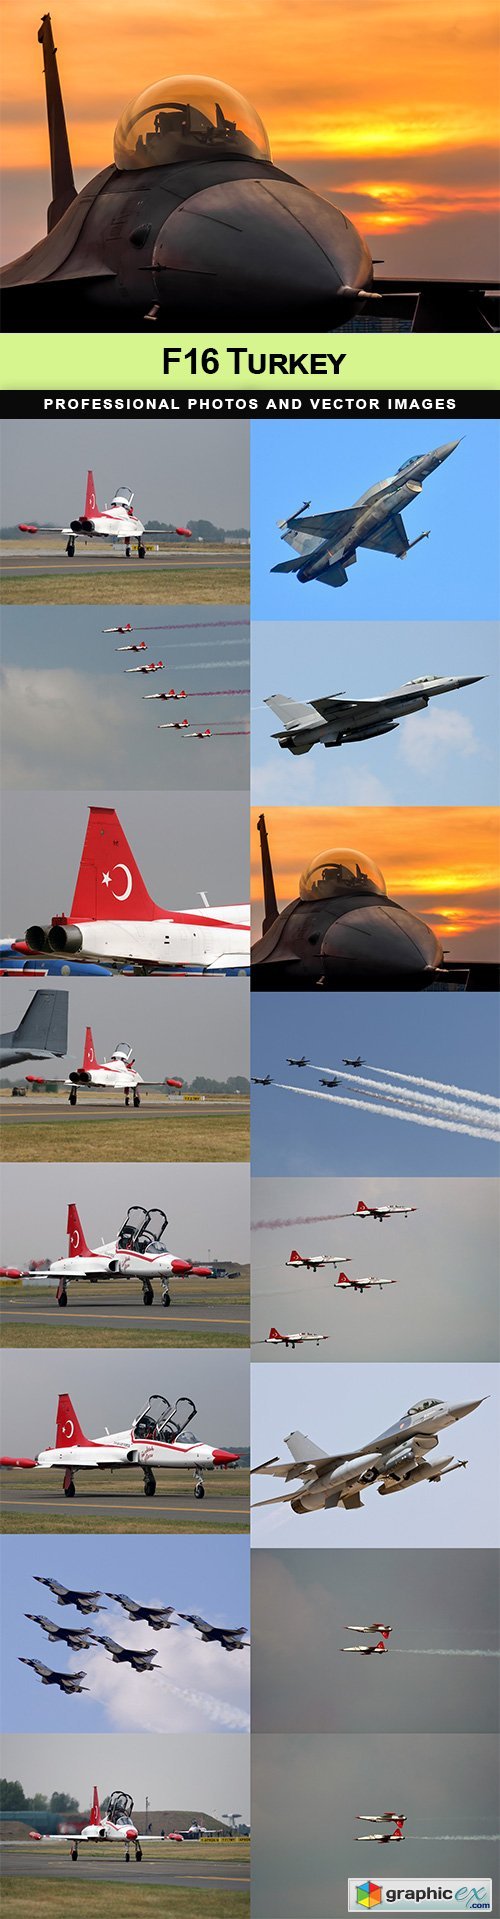 F16 Turkey